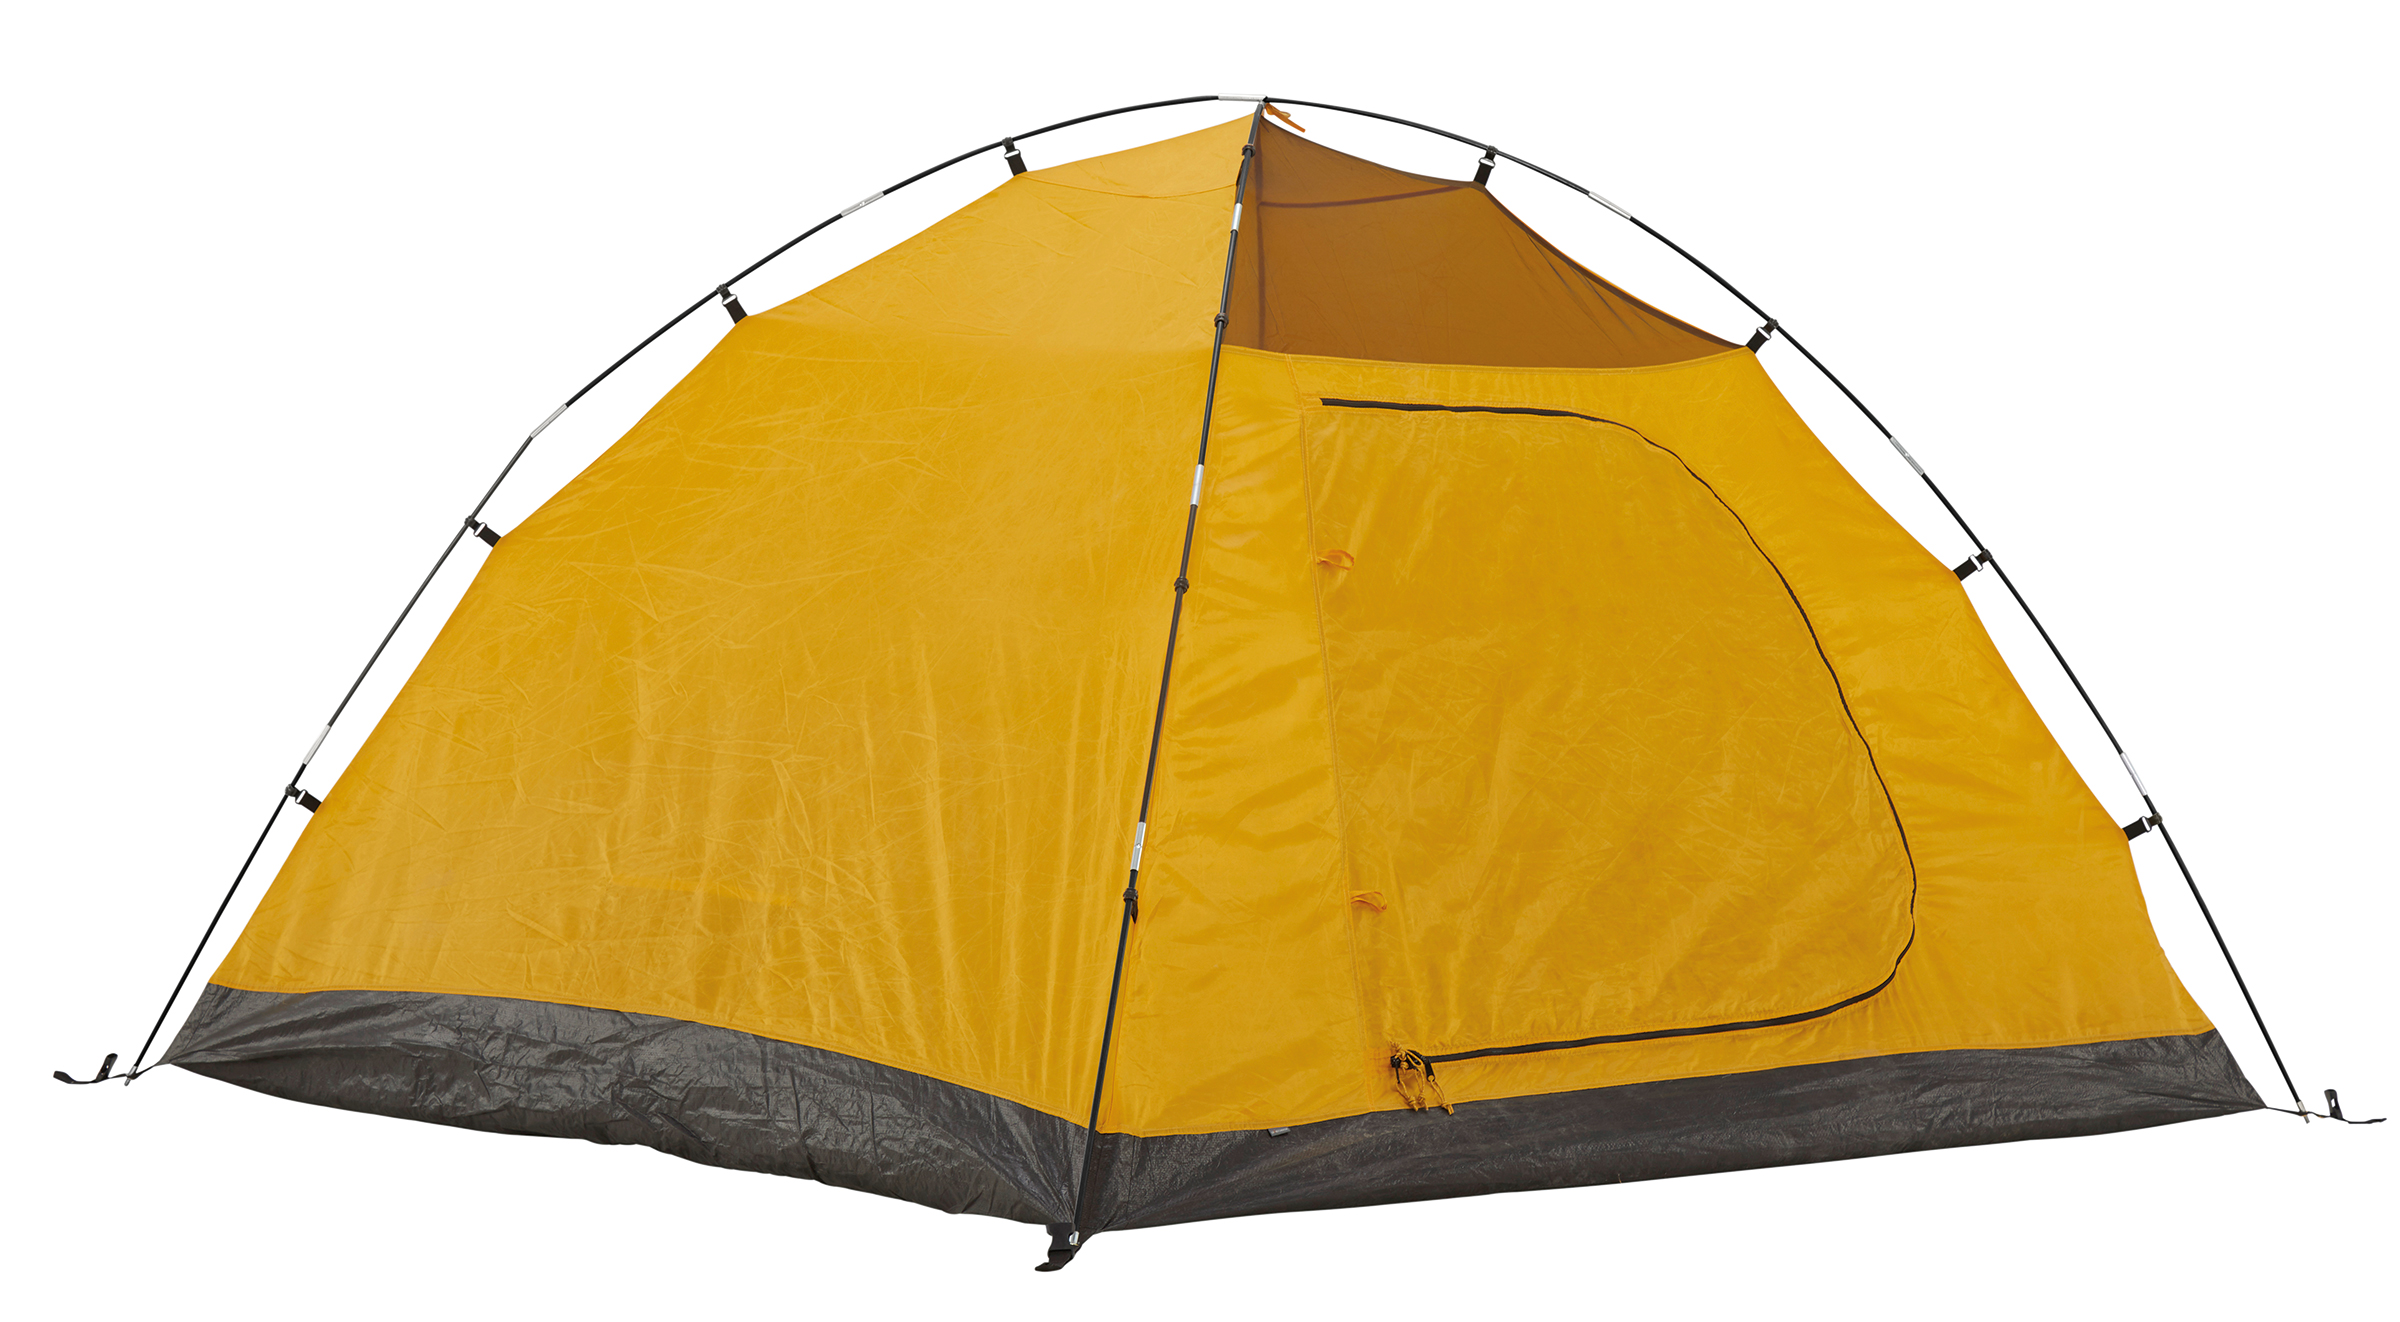 Tenda a cupola per 3 persone Grand Canyon Topeka 3 attività allaperto impermeabile ingombro ridotto campeggio per trekking ultra leggera 